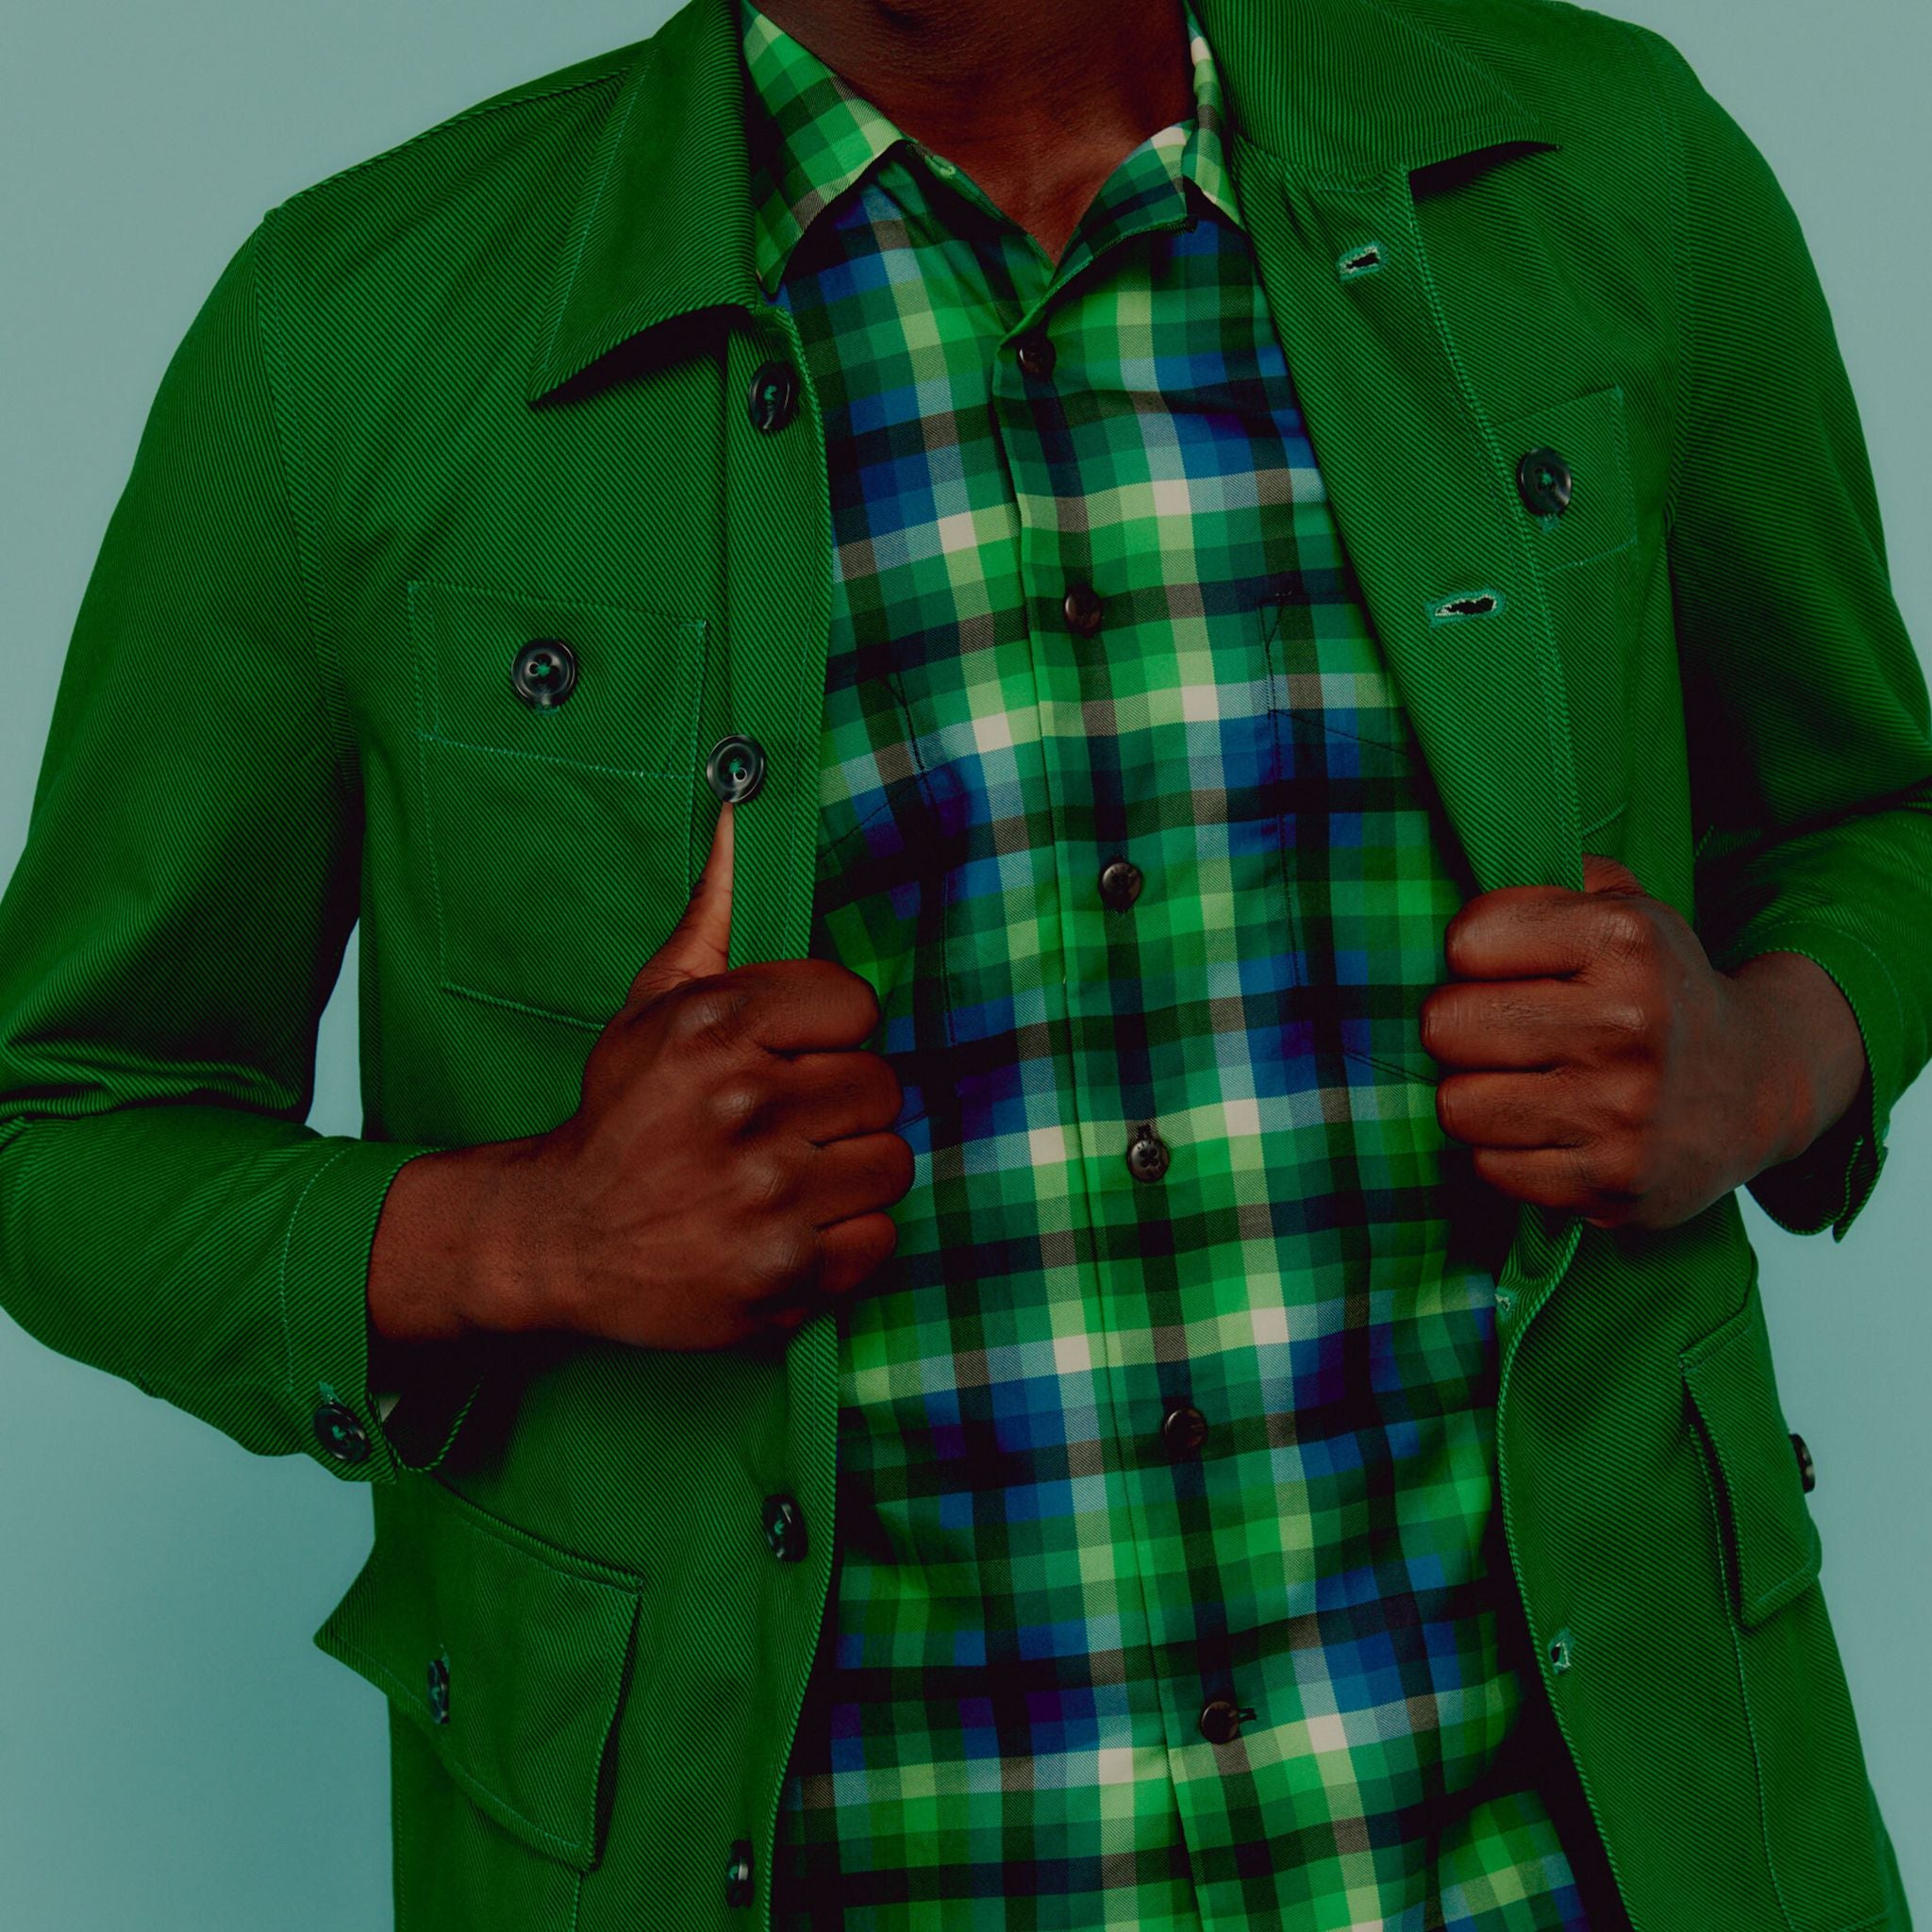 Men's Lichen Green Harris Tweed Chore Jacket